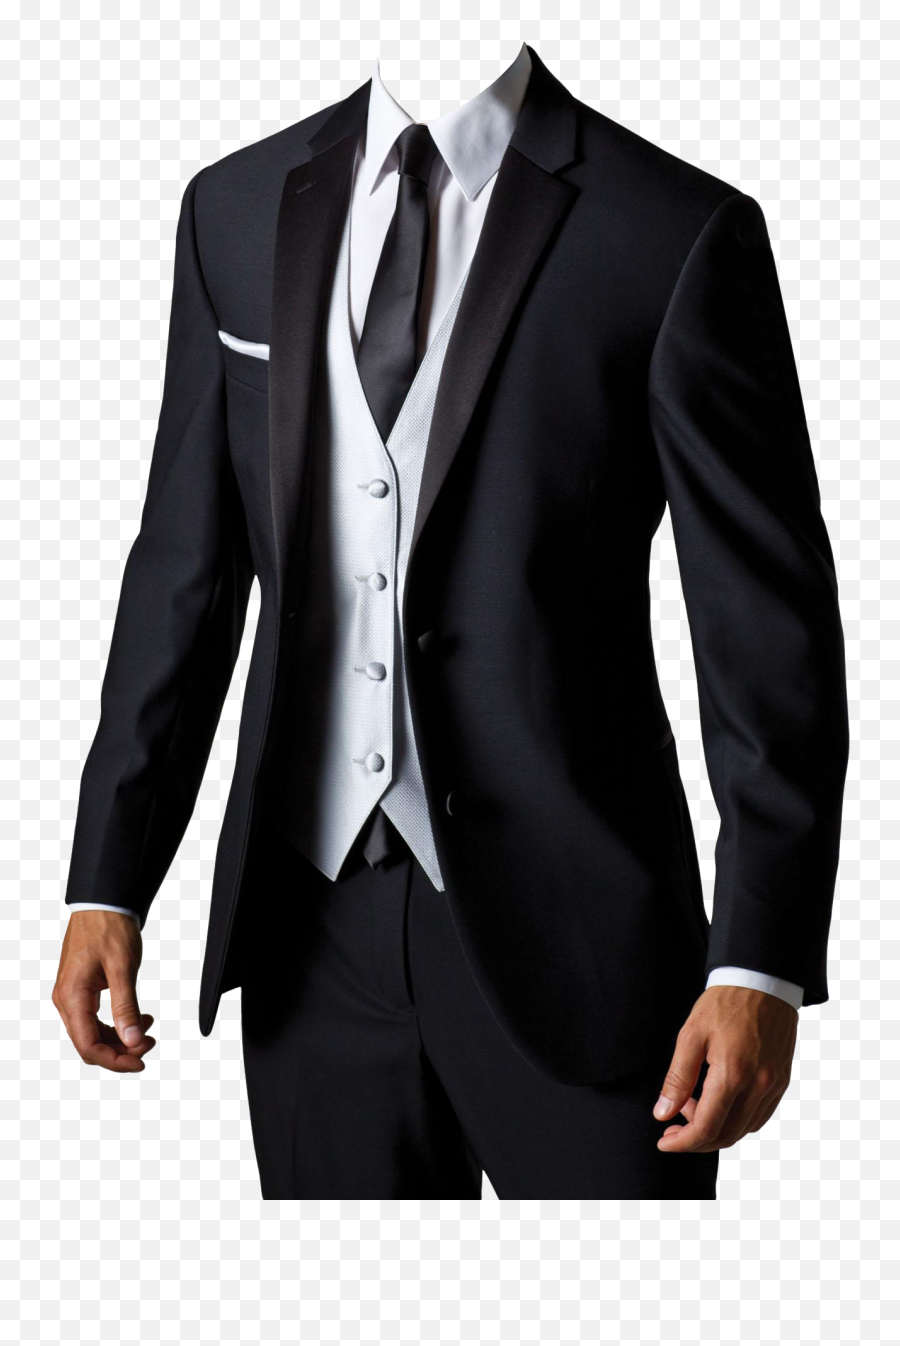 Suit Png Transparent Image - Suit Png Emoji,Suit Png